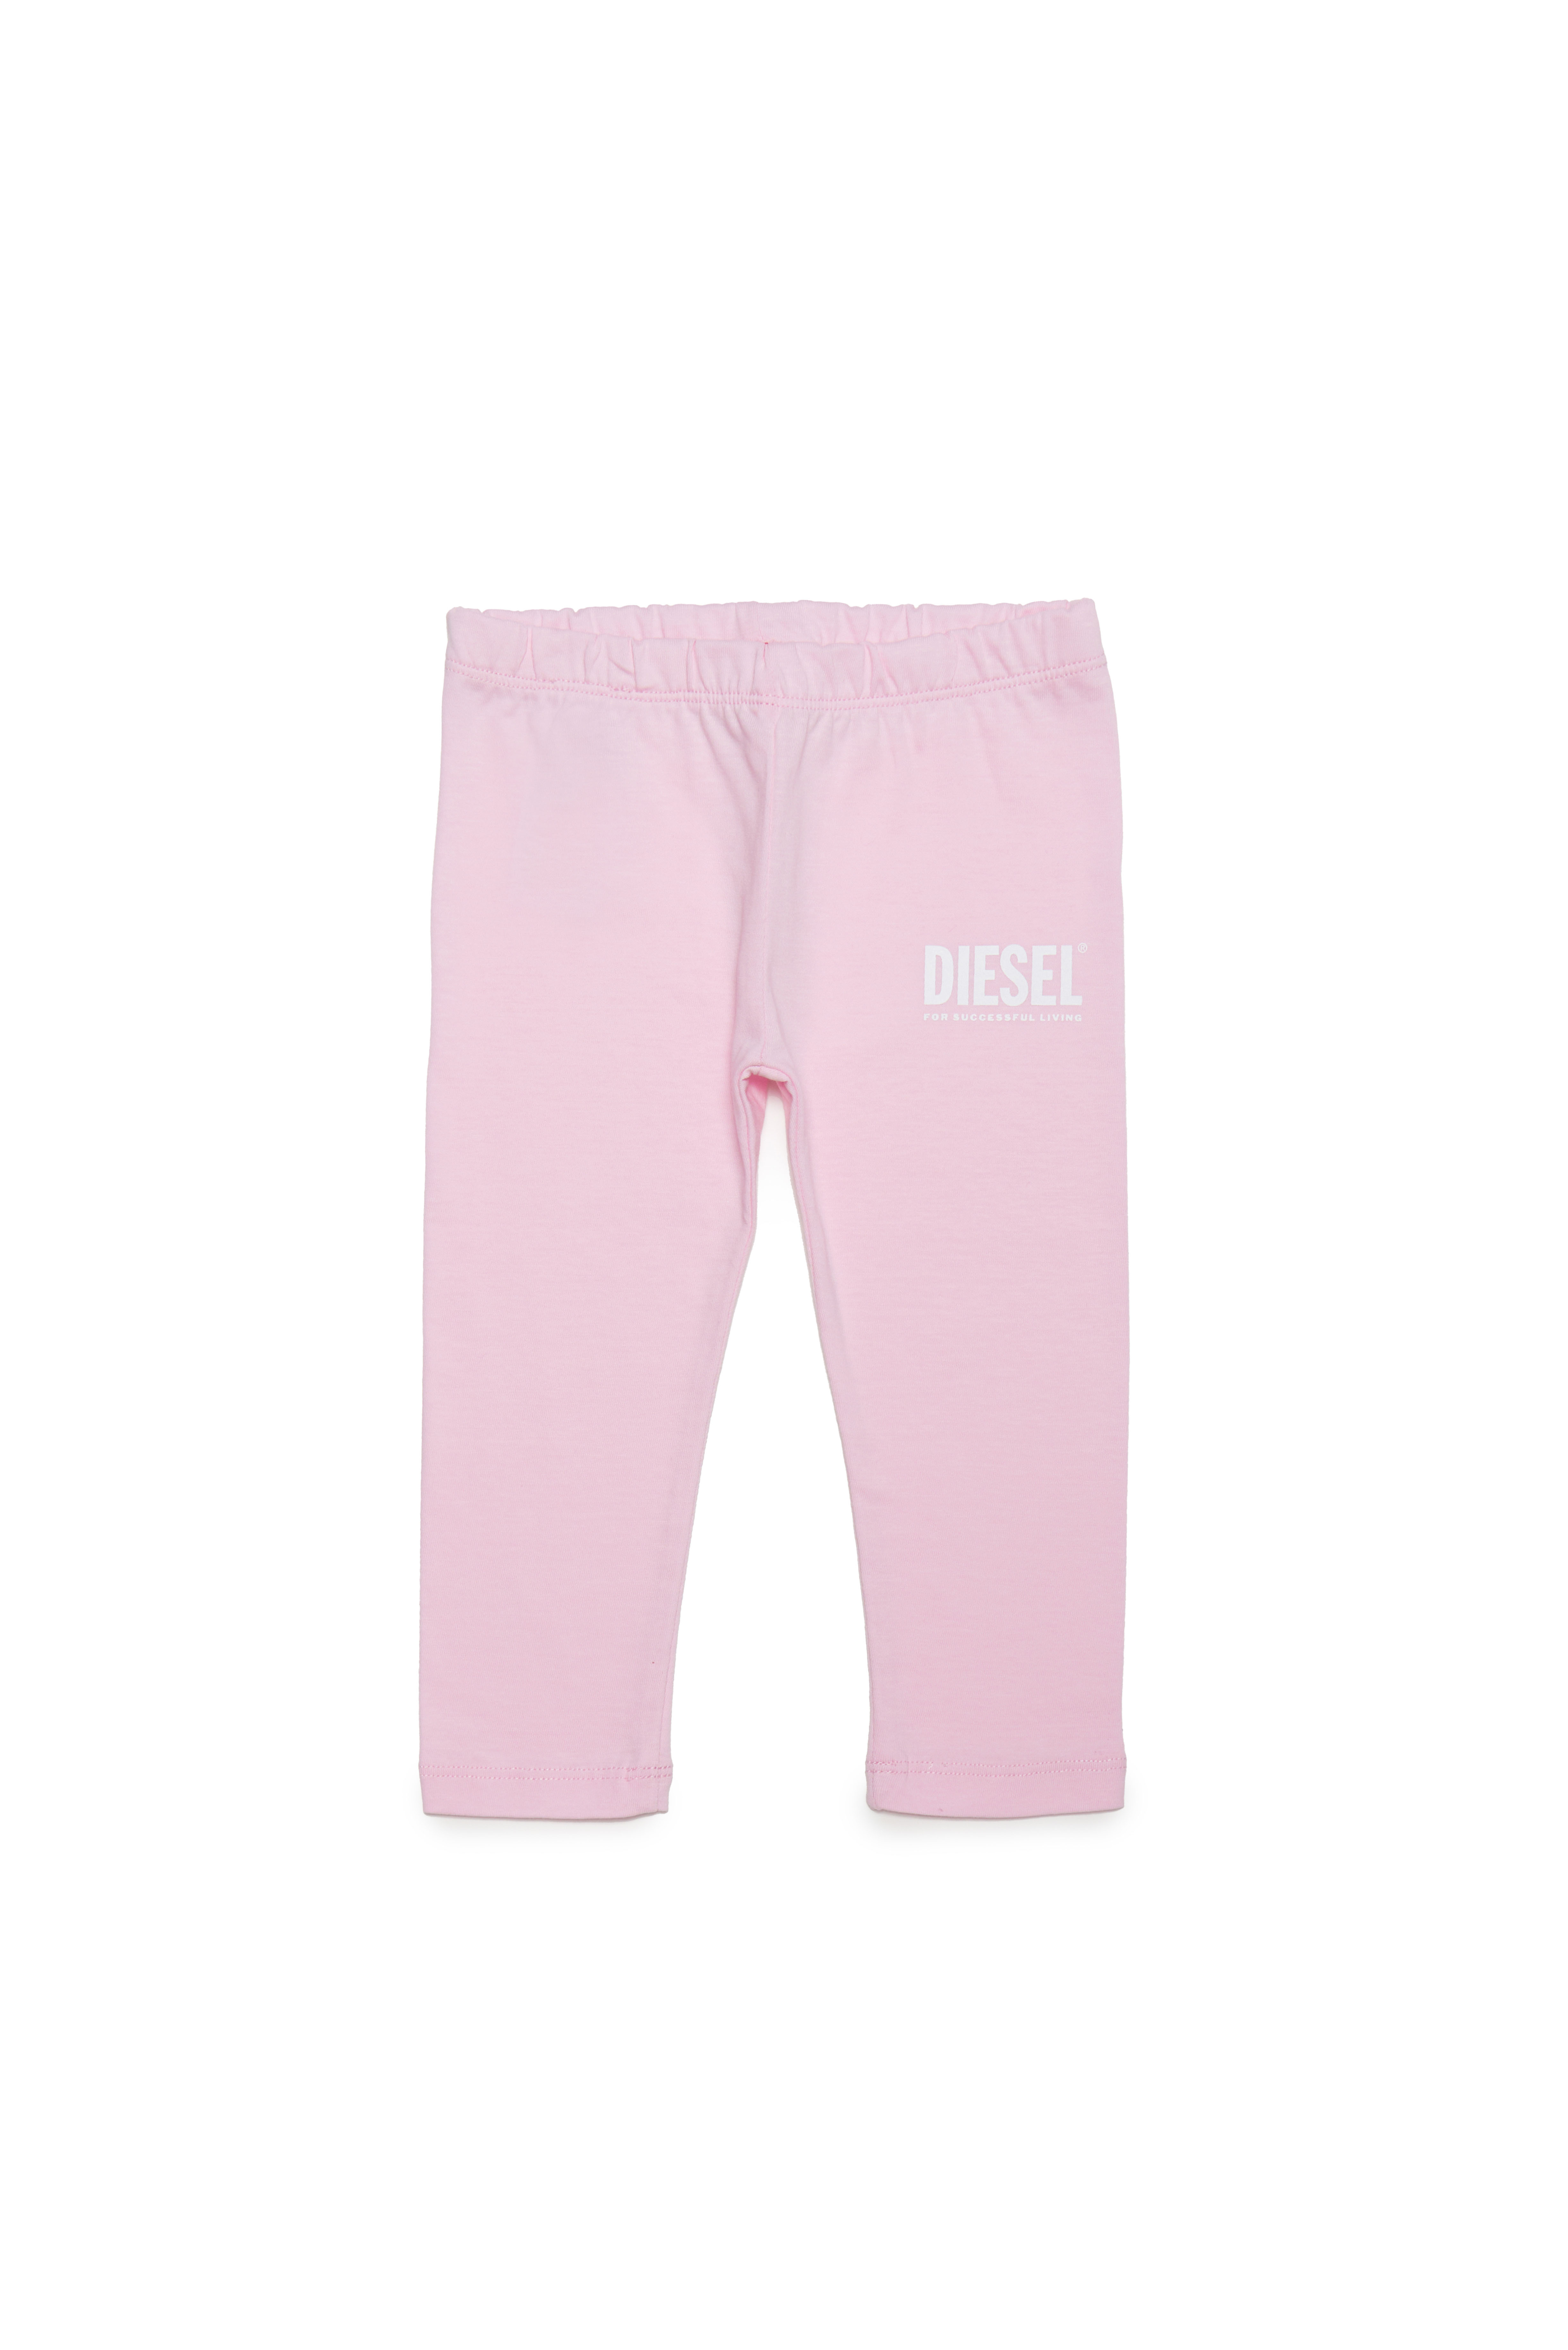 Diesel - Cotton pants with logo print - Pants - Woman - Pink